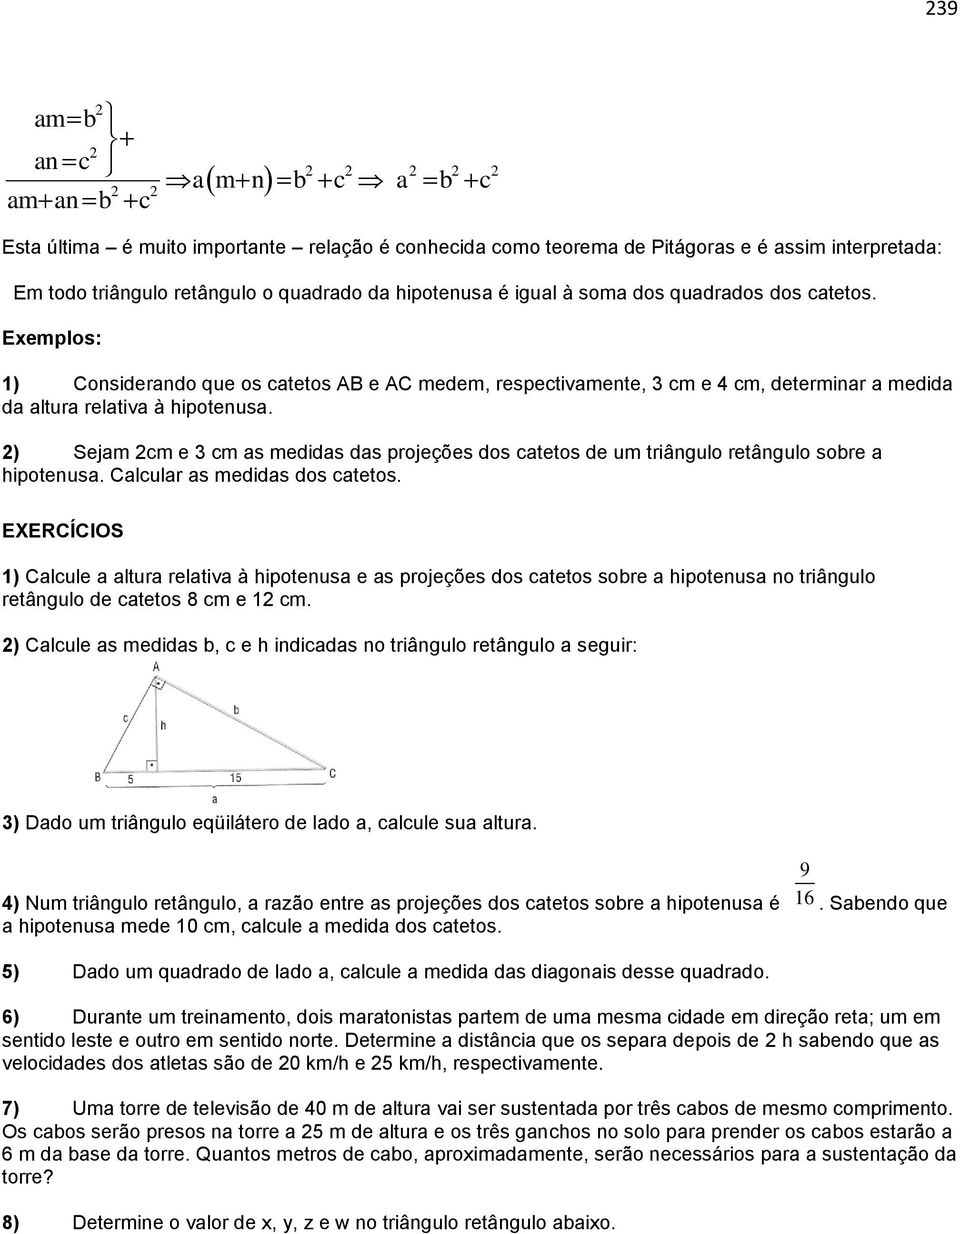 2) Sejam 2cm e 3 cm as medidas das projeções dos catetos de um triângulo retângulo sobre a hipotenusa. Calcular as medidas dos catetos.